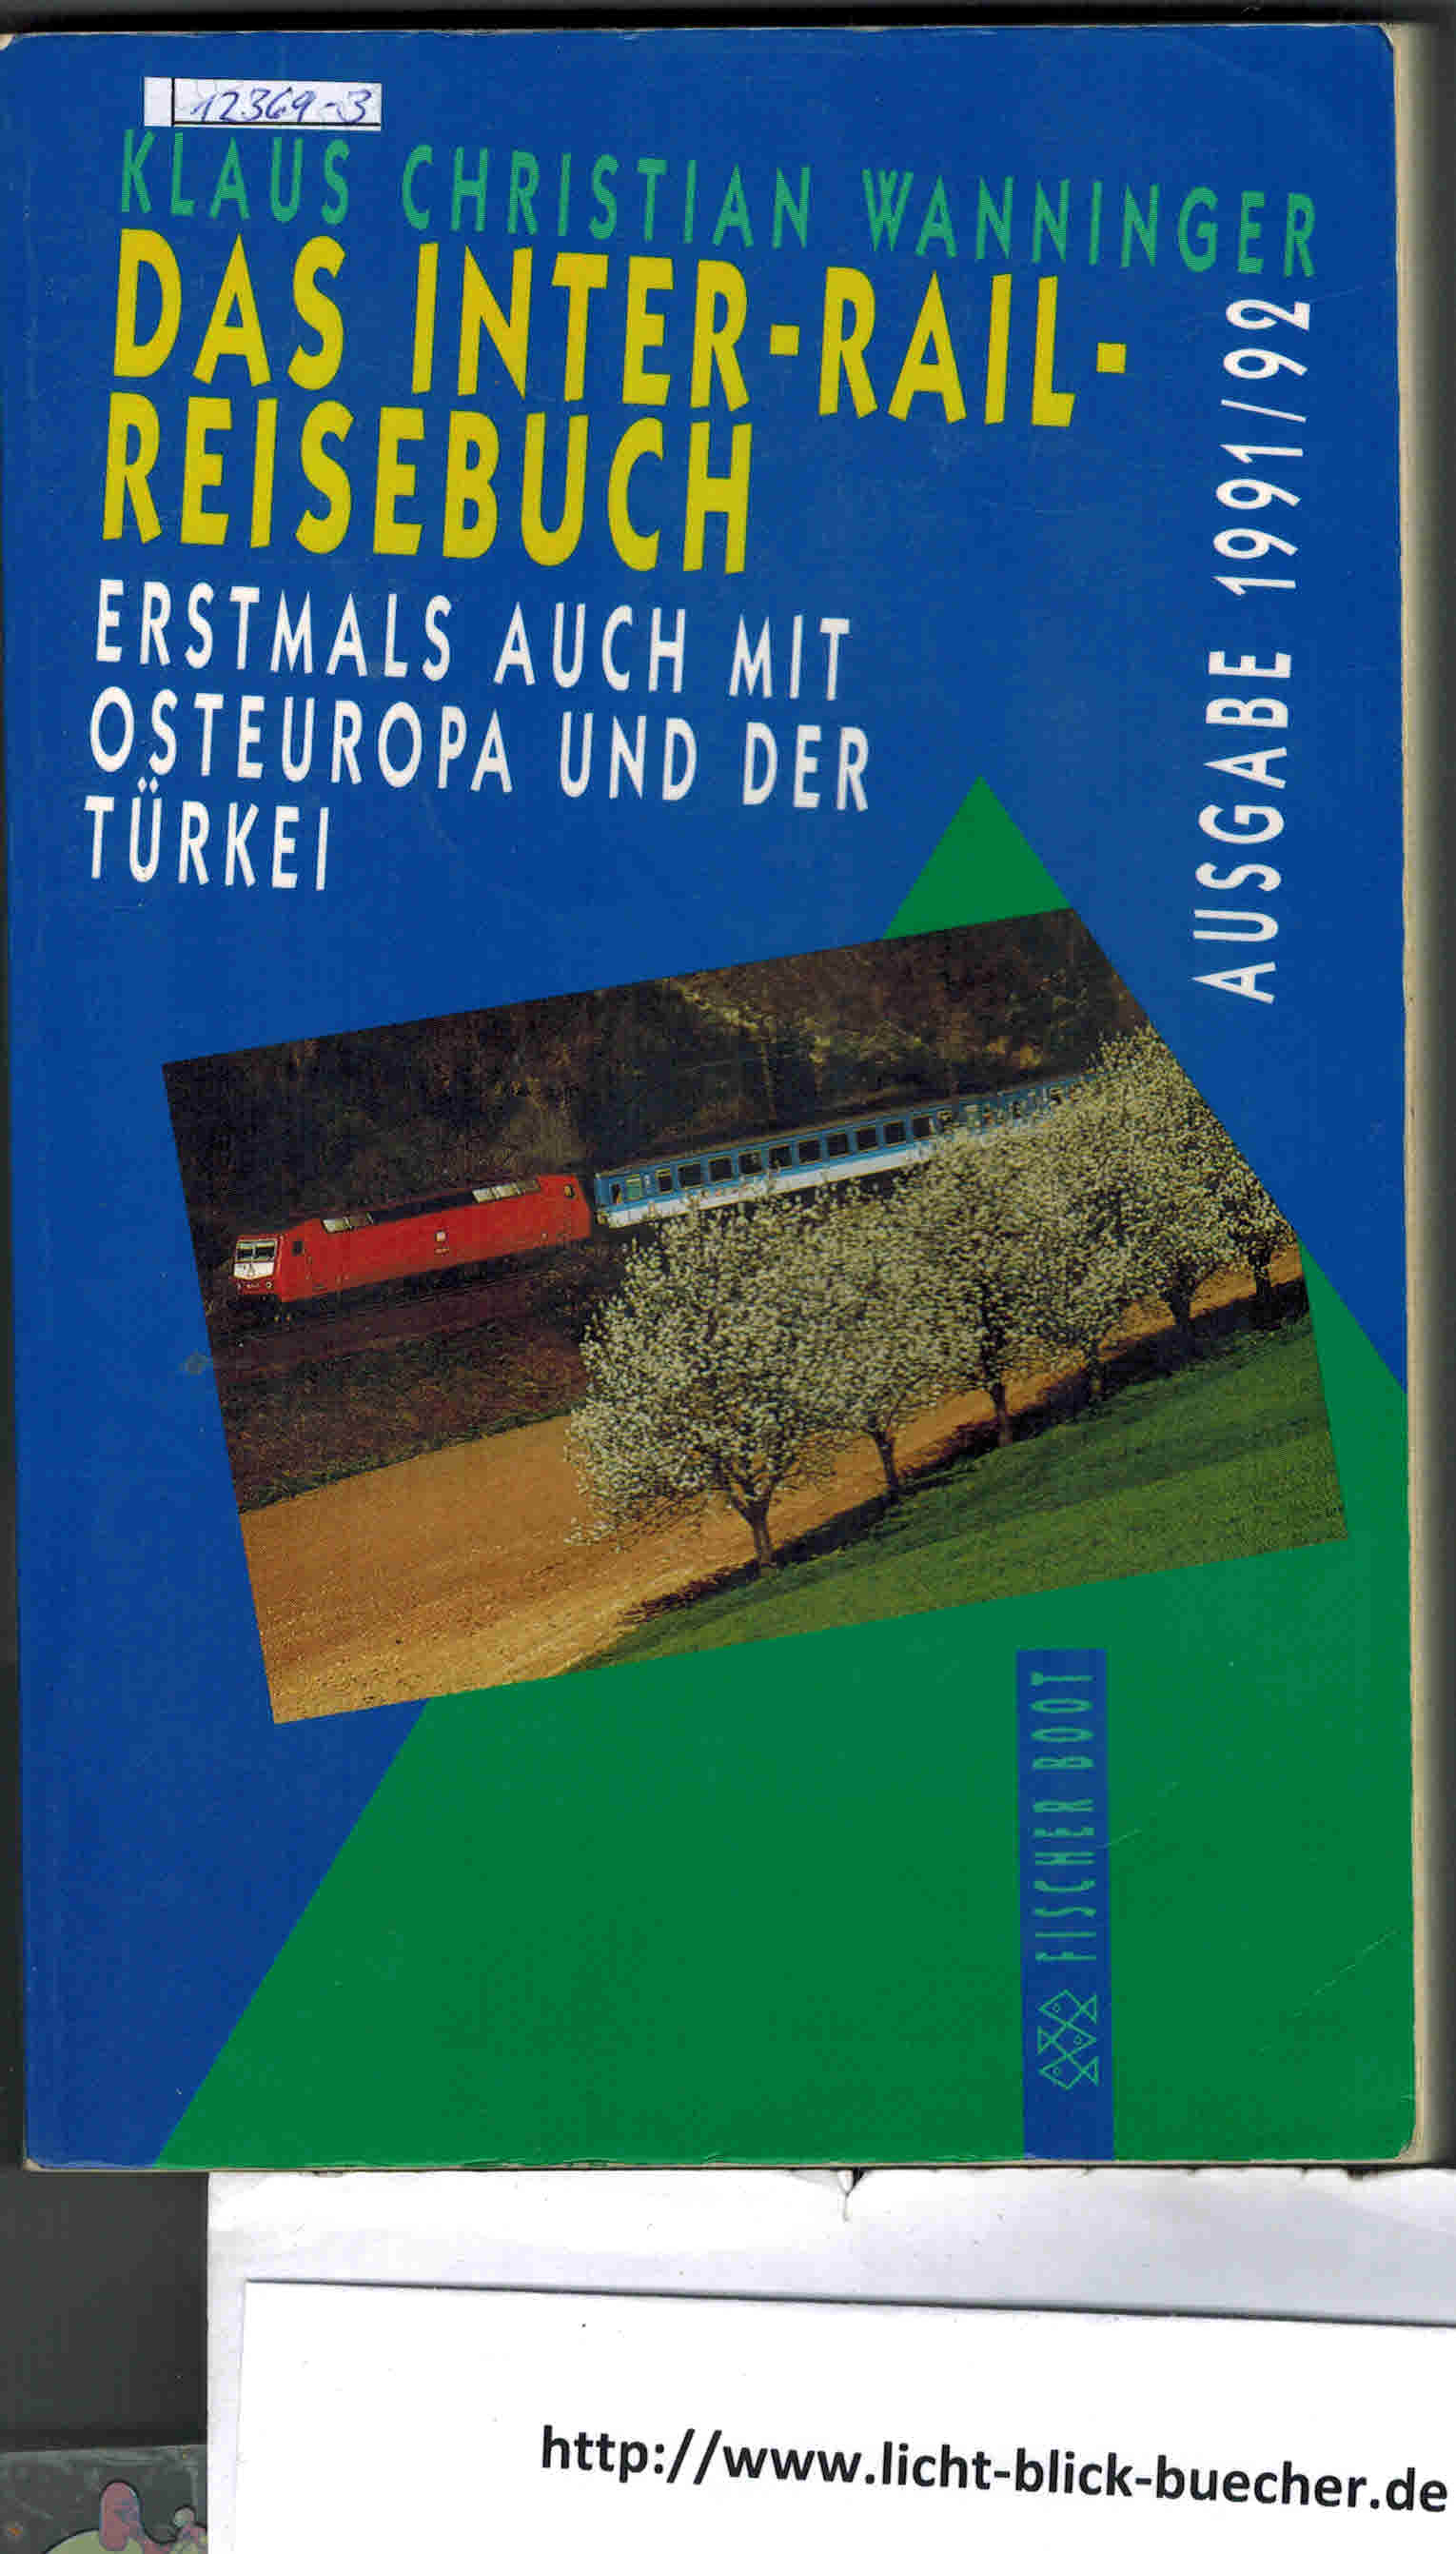 Das neue Inter-Rail-ReisebuchAusgabe 1991 / 92Klaus Christian Wanninger